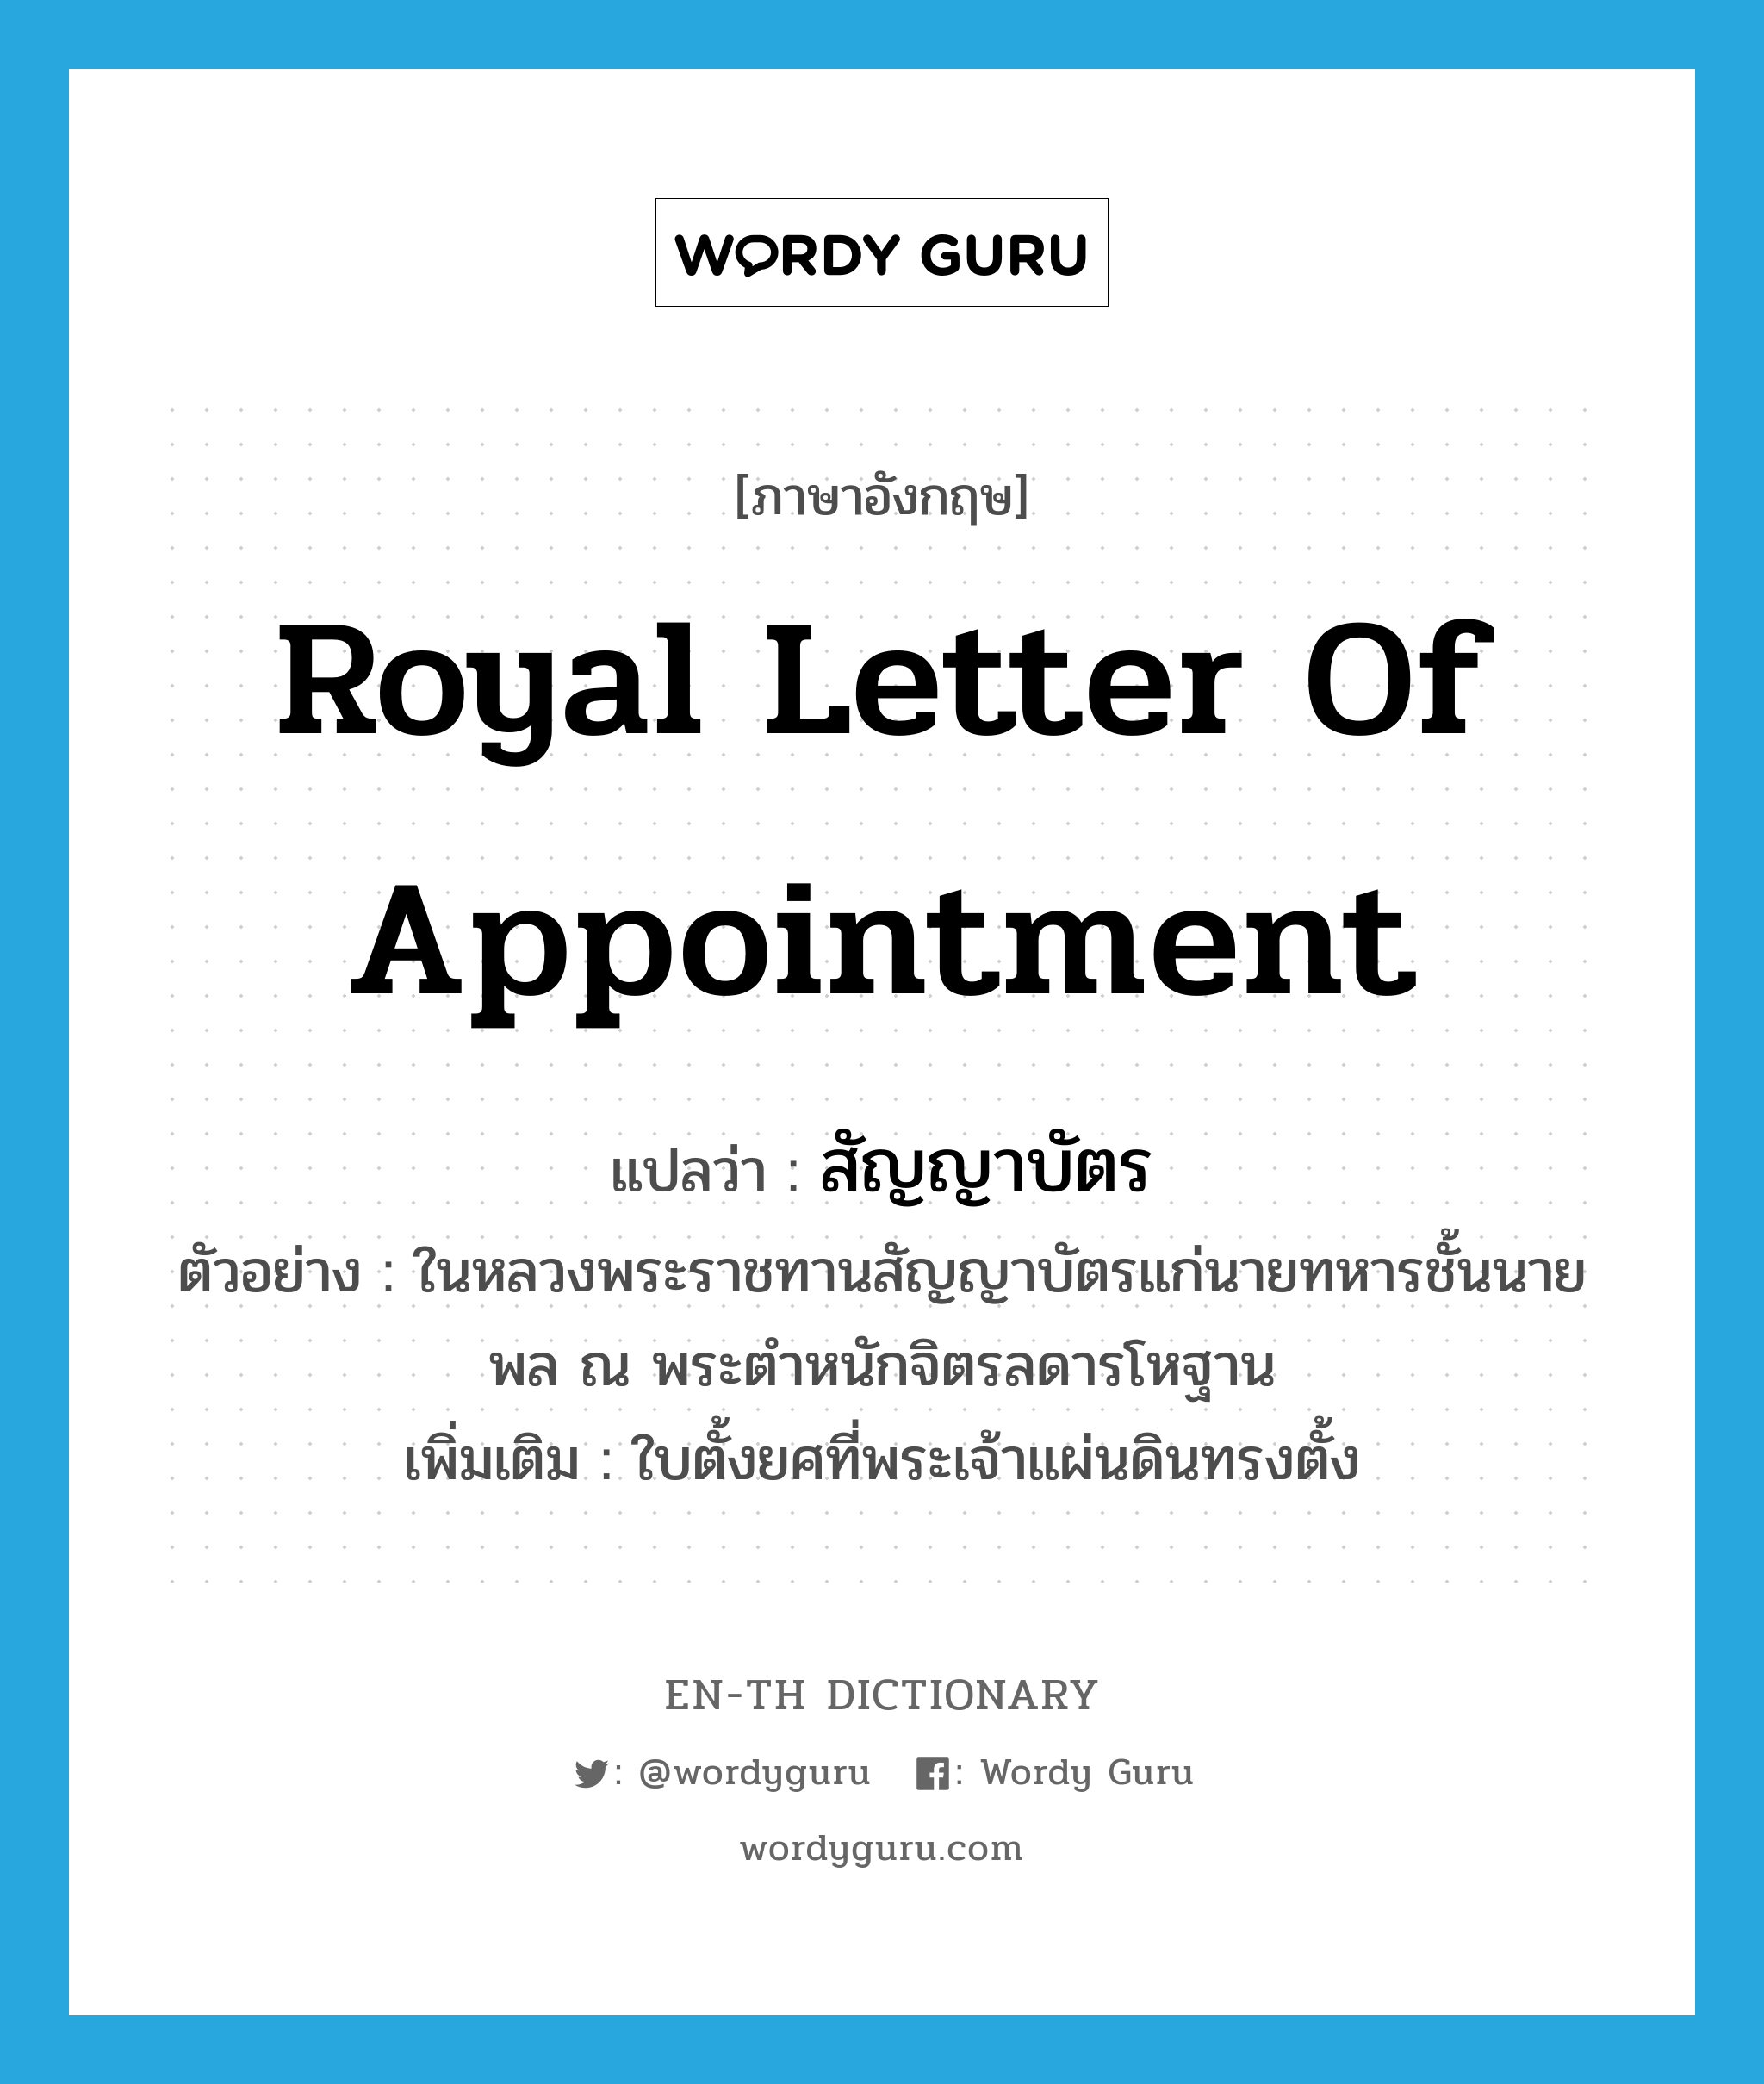 royal letter of appointment แปลว่า?, คำศัพท์ภาษาอังกฤษ royal letter of appointment แปลว่า สัญญาบัตร ประเภท N ตัวอย่าง ในหลวงพระราชทานสัญญาบัตรแก่นายทหารชั้นนายพล ณ พระตำหนักจิตรลดารโหฐาน เพิ่มเติม ใบตั้งยศที่พระเจ้าแผ่นดินทรงตั้ง หมวด N